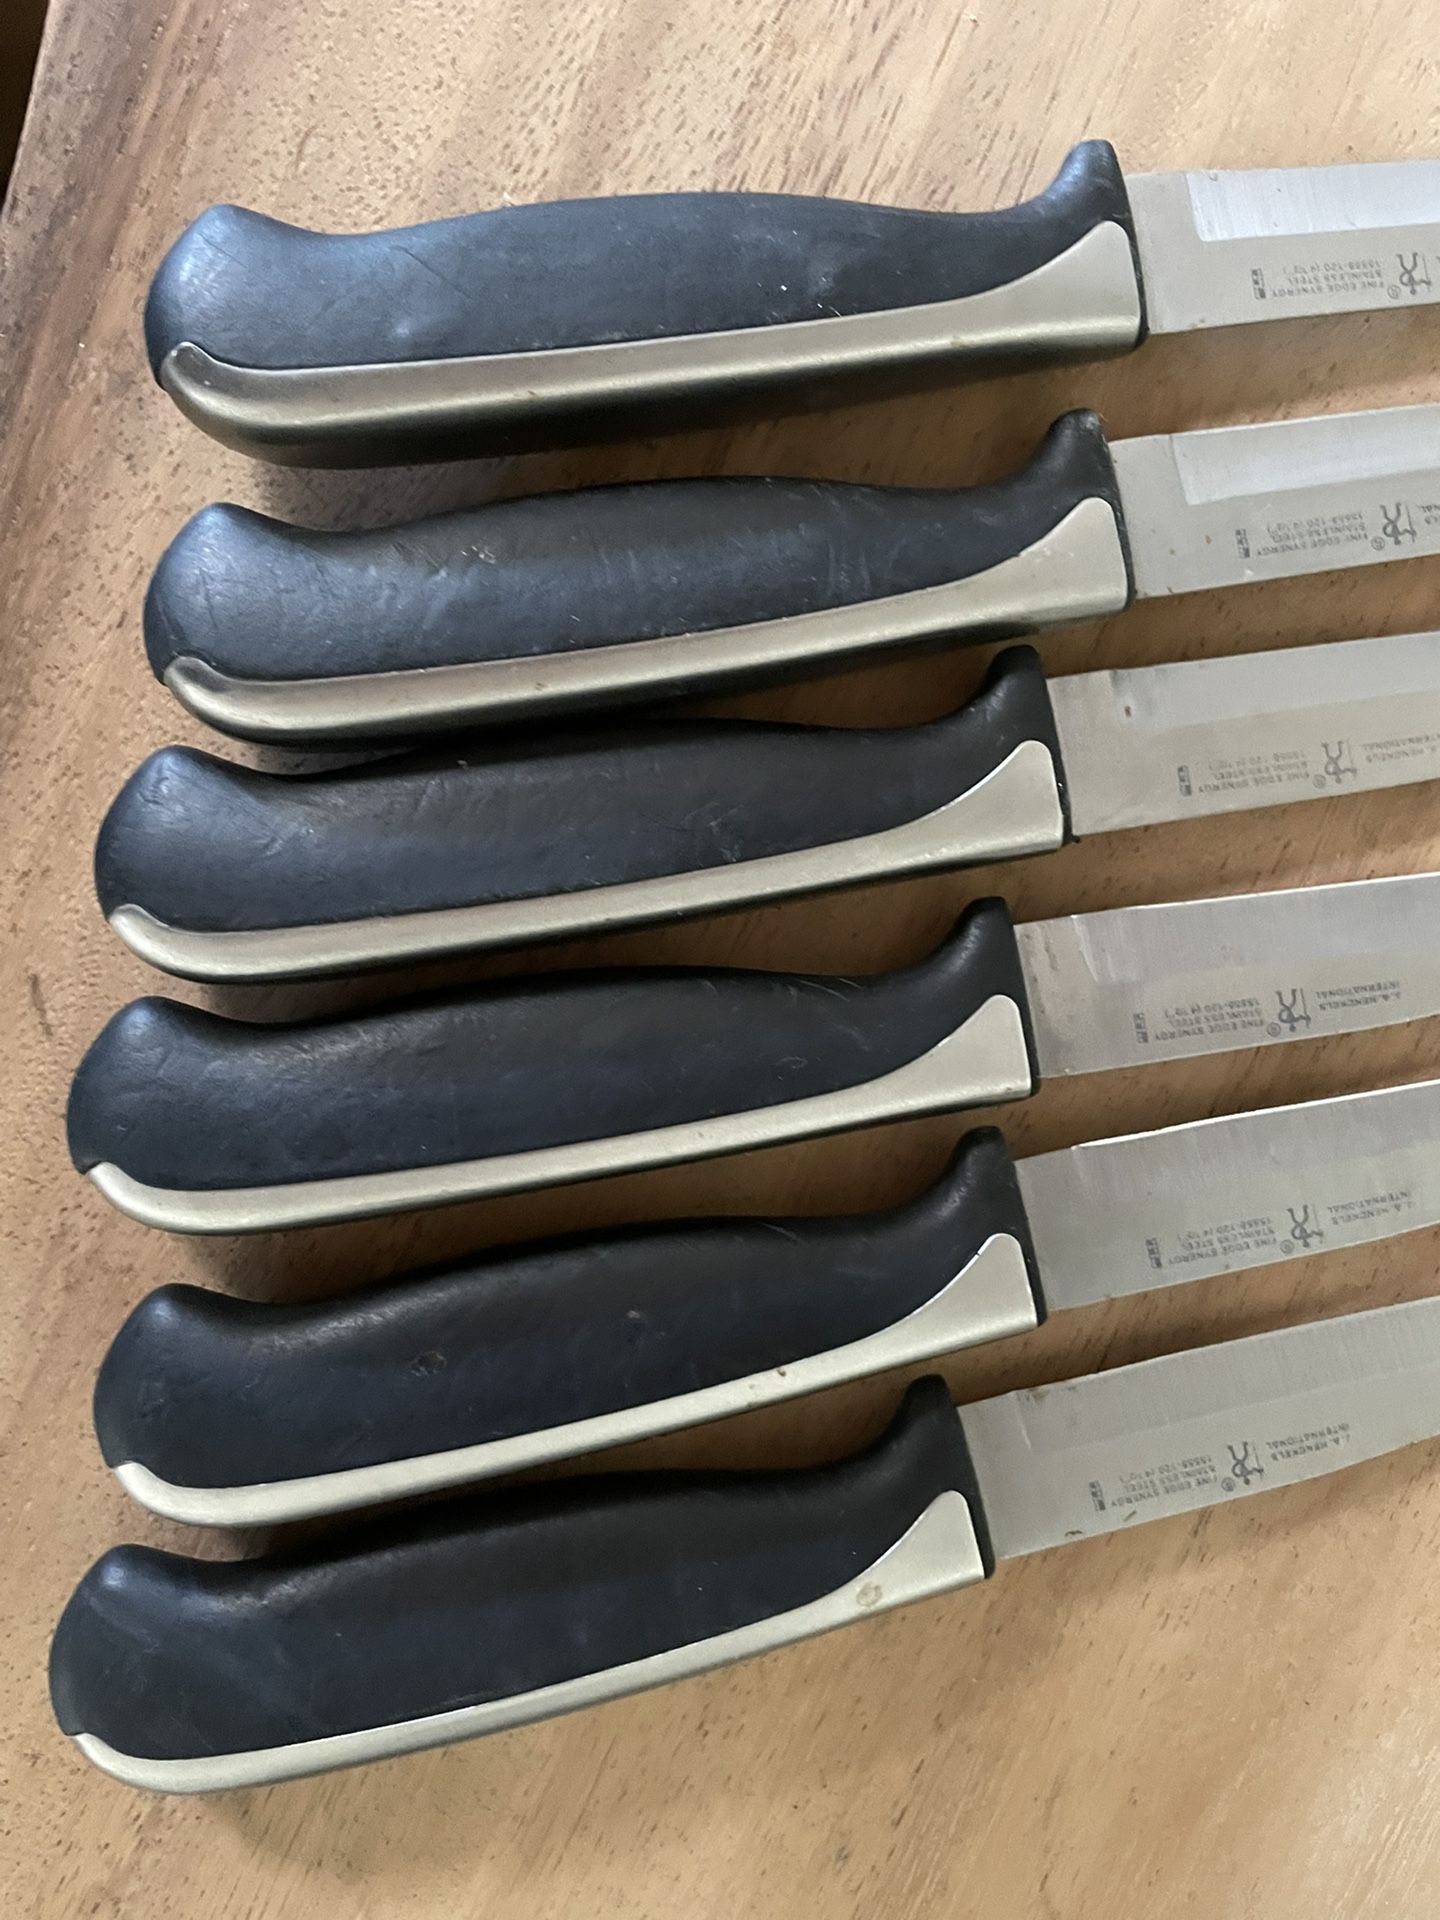 Henckels Steak Knives for Sale in Scottsdale, AZ - OfferUp